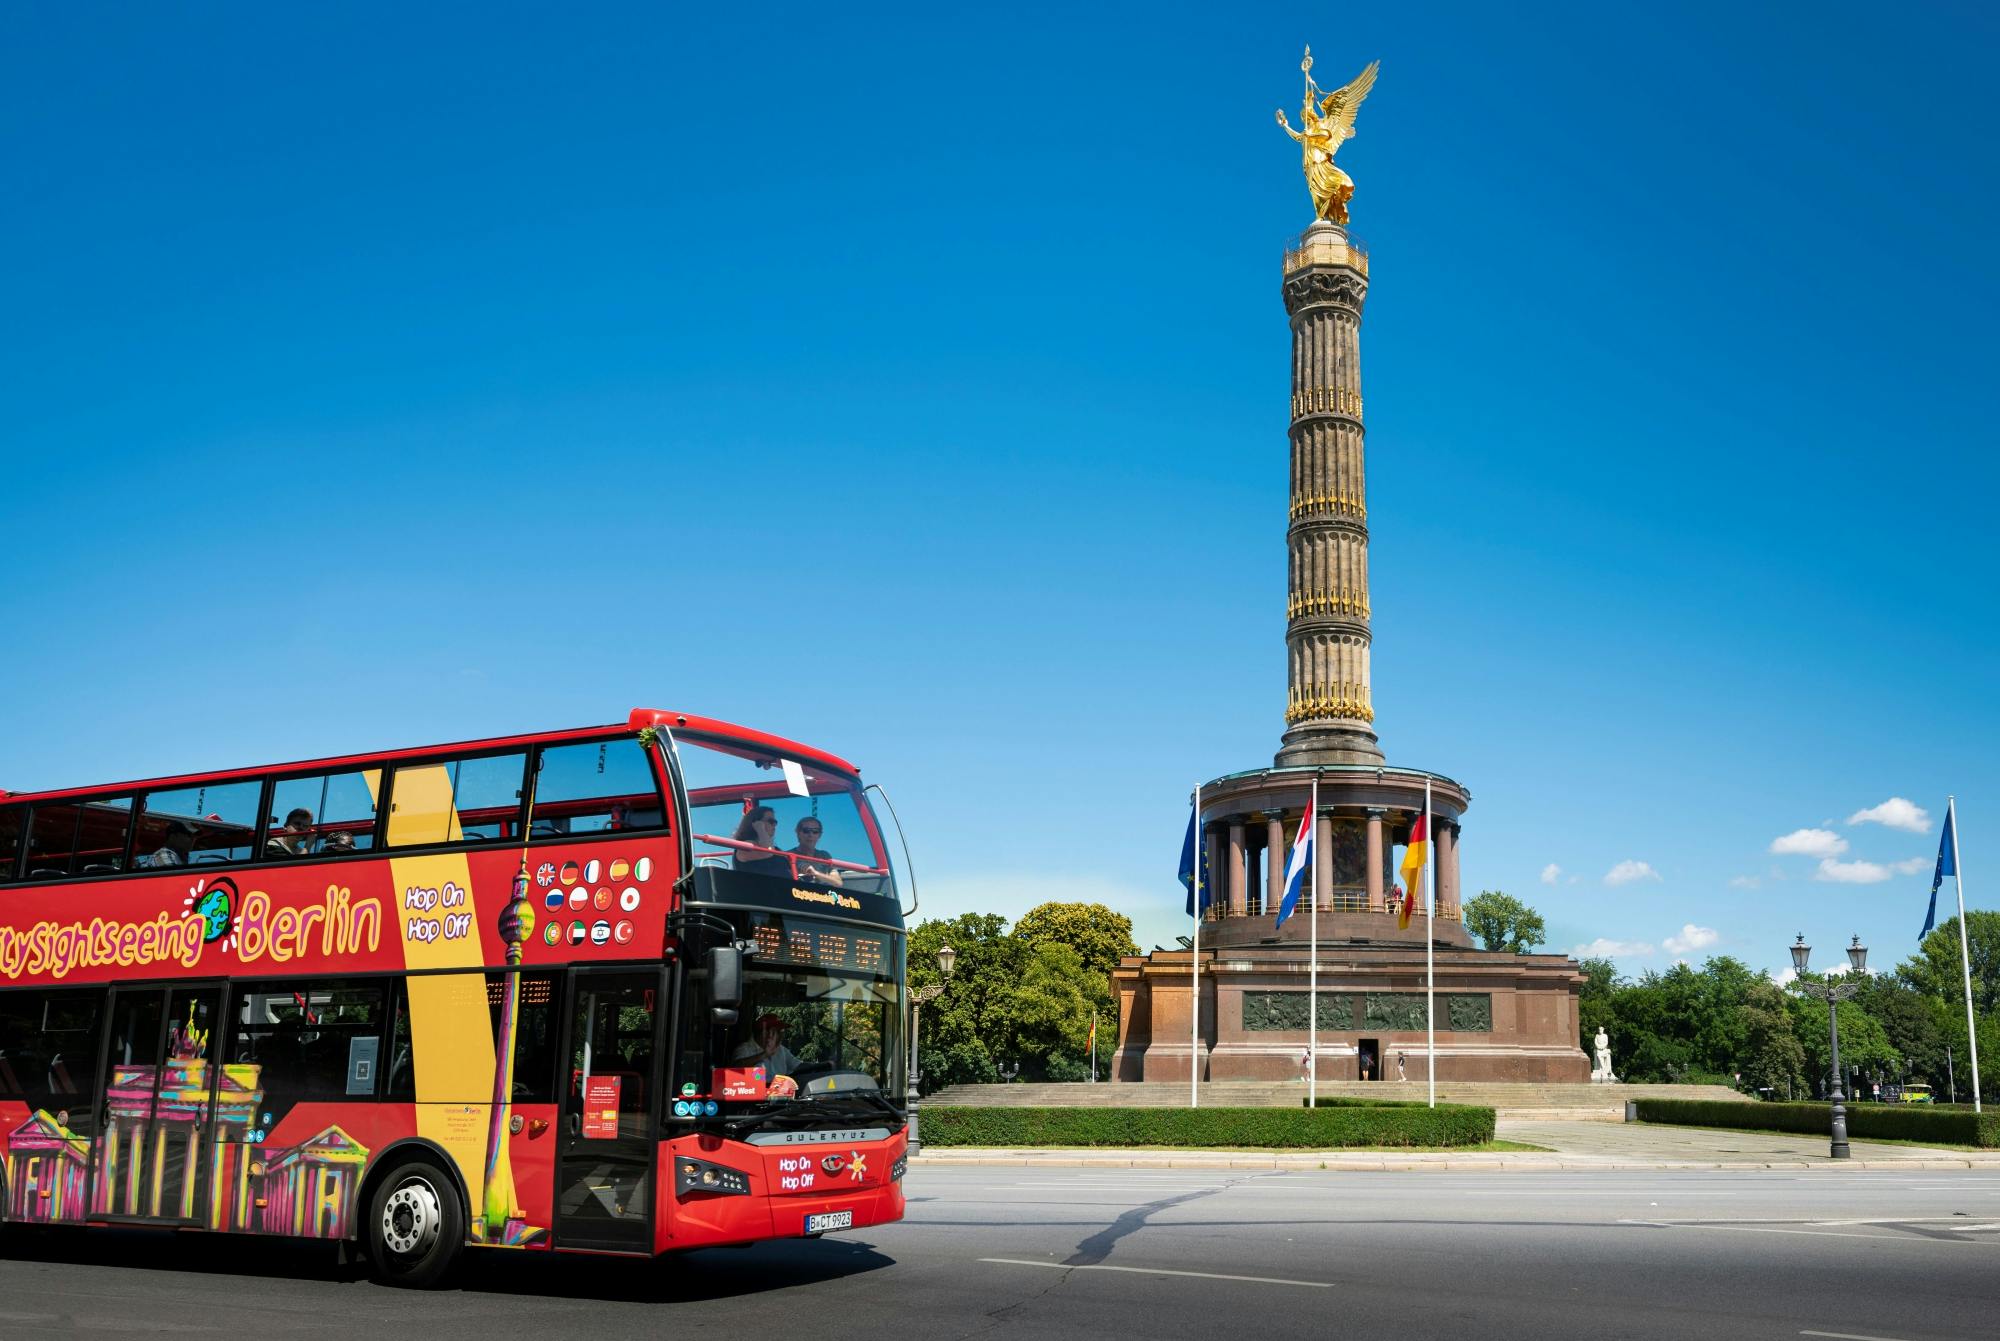 Recorrido en bus turístico de City Sightseeing con paradas libres por Berlín